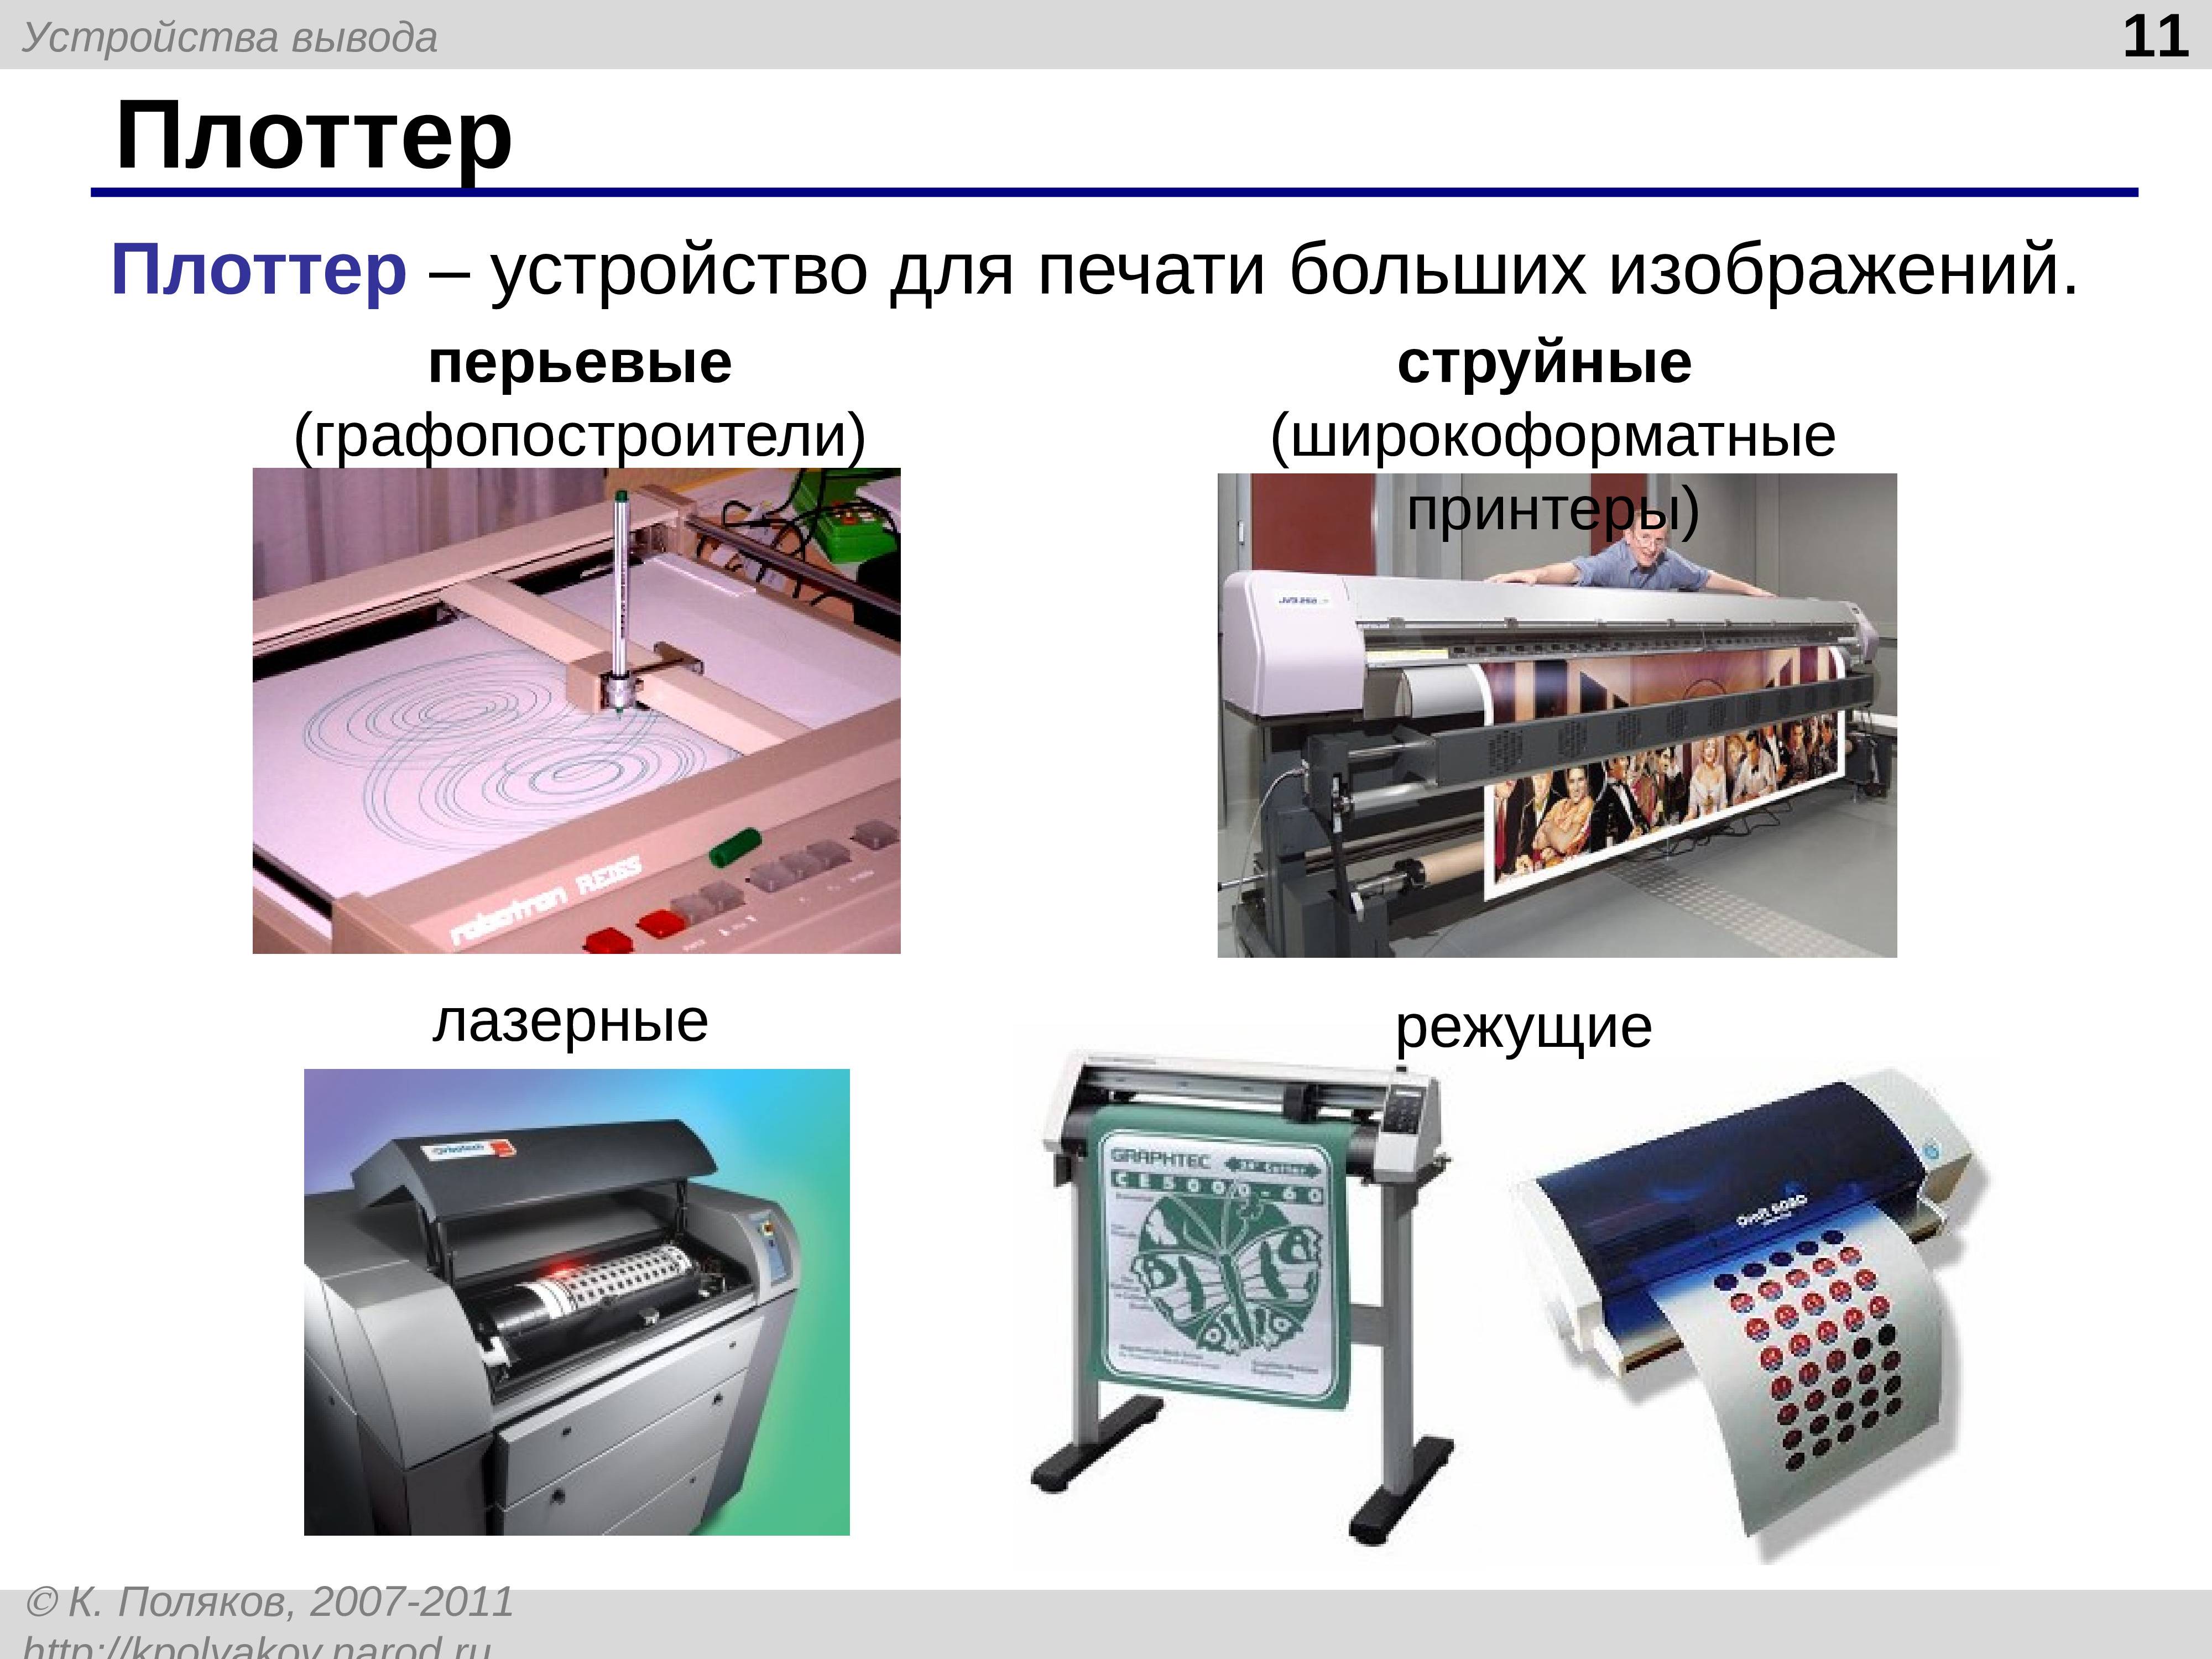 Обзор различных видов плоттеров и их особенностей.